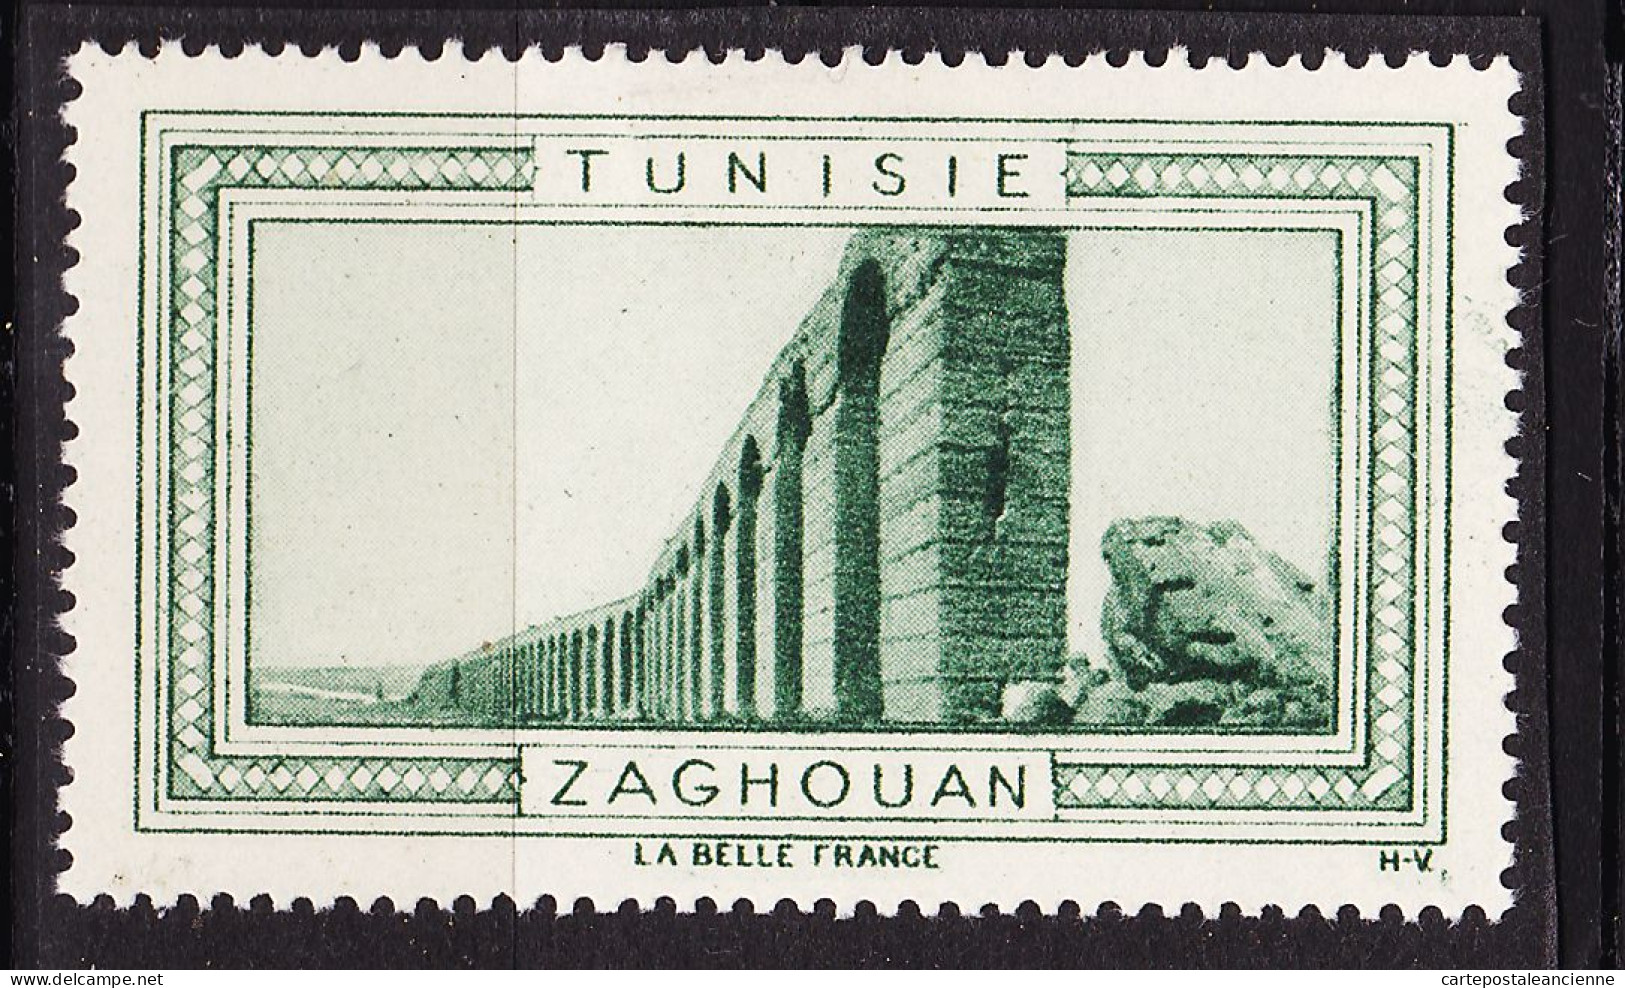 13011 ● ZAGHOUAN TUNISIE Vignette De Collection LA BELLE FRANCE 1925s H-V Helio VAUGIRARD PARIS Erinnophilie - Tourismus (Vignetten)